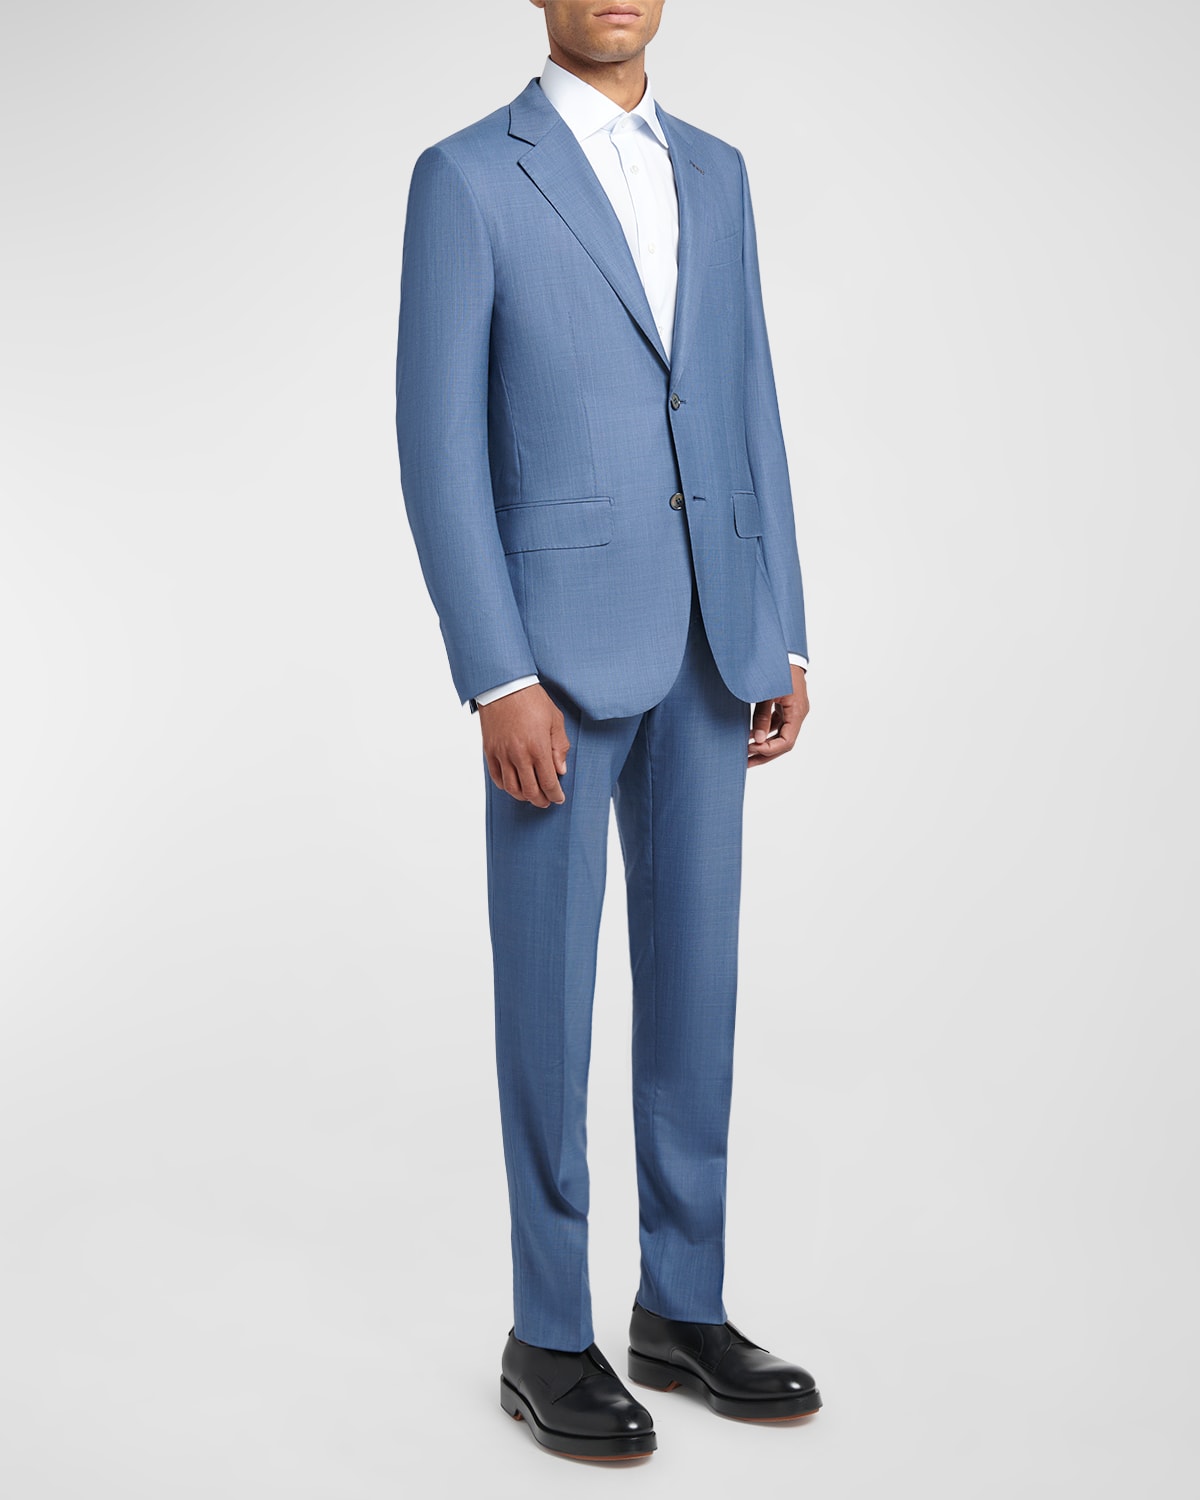 Zegna Men's Plaid Couture Wool Suit In Medium Blue